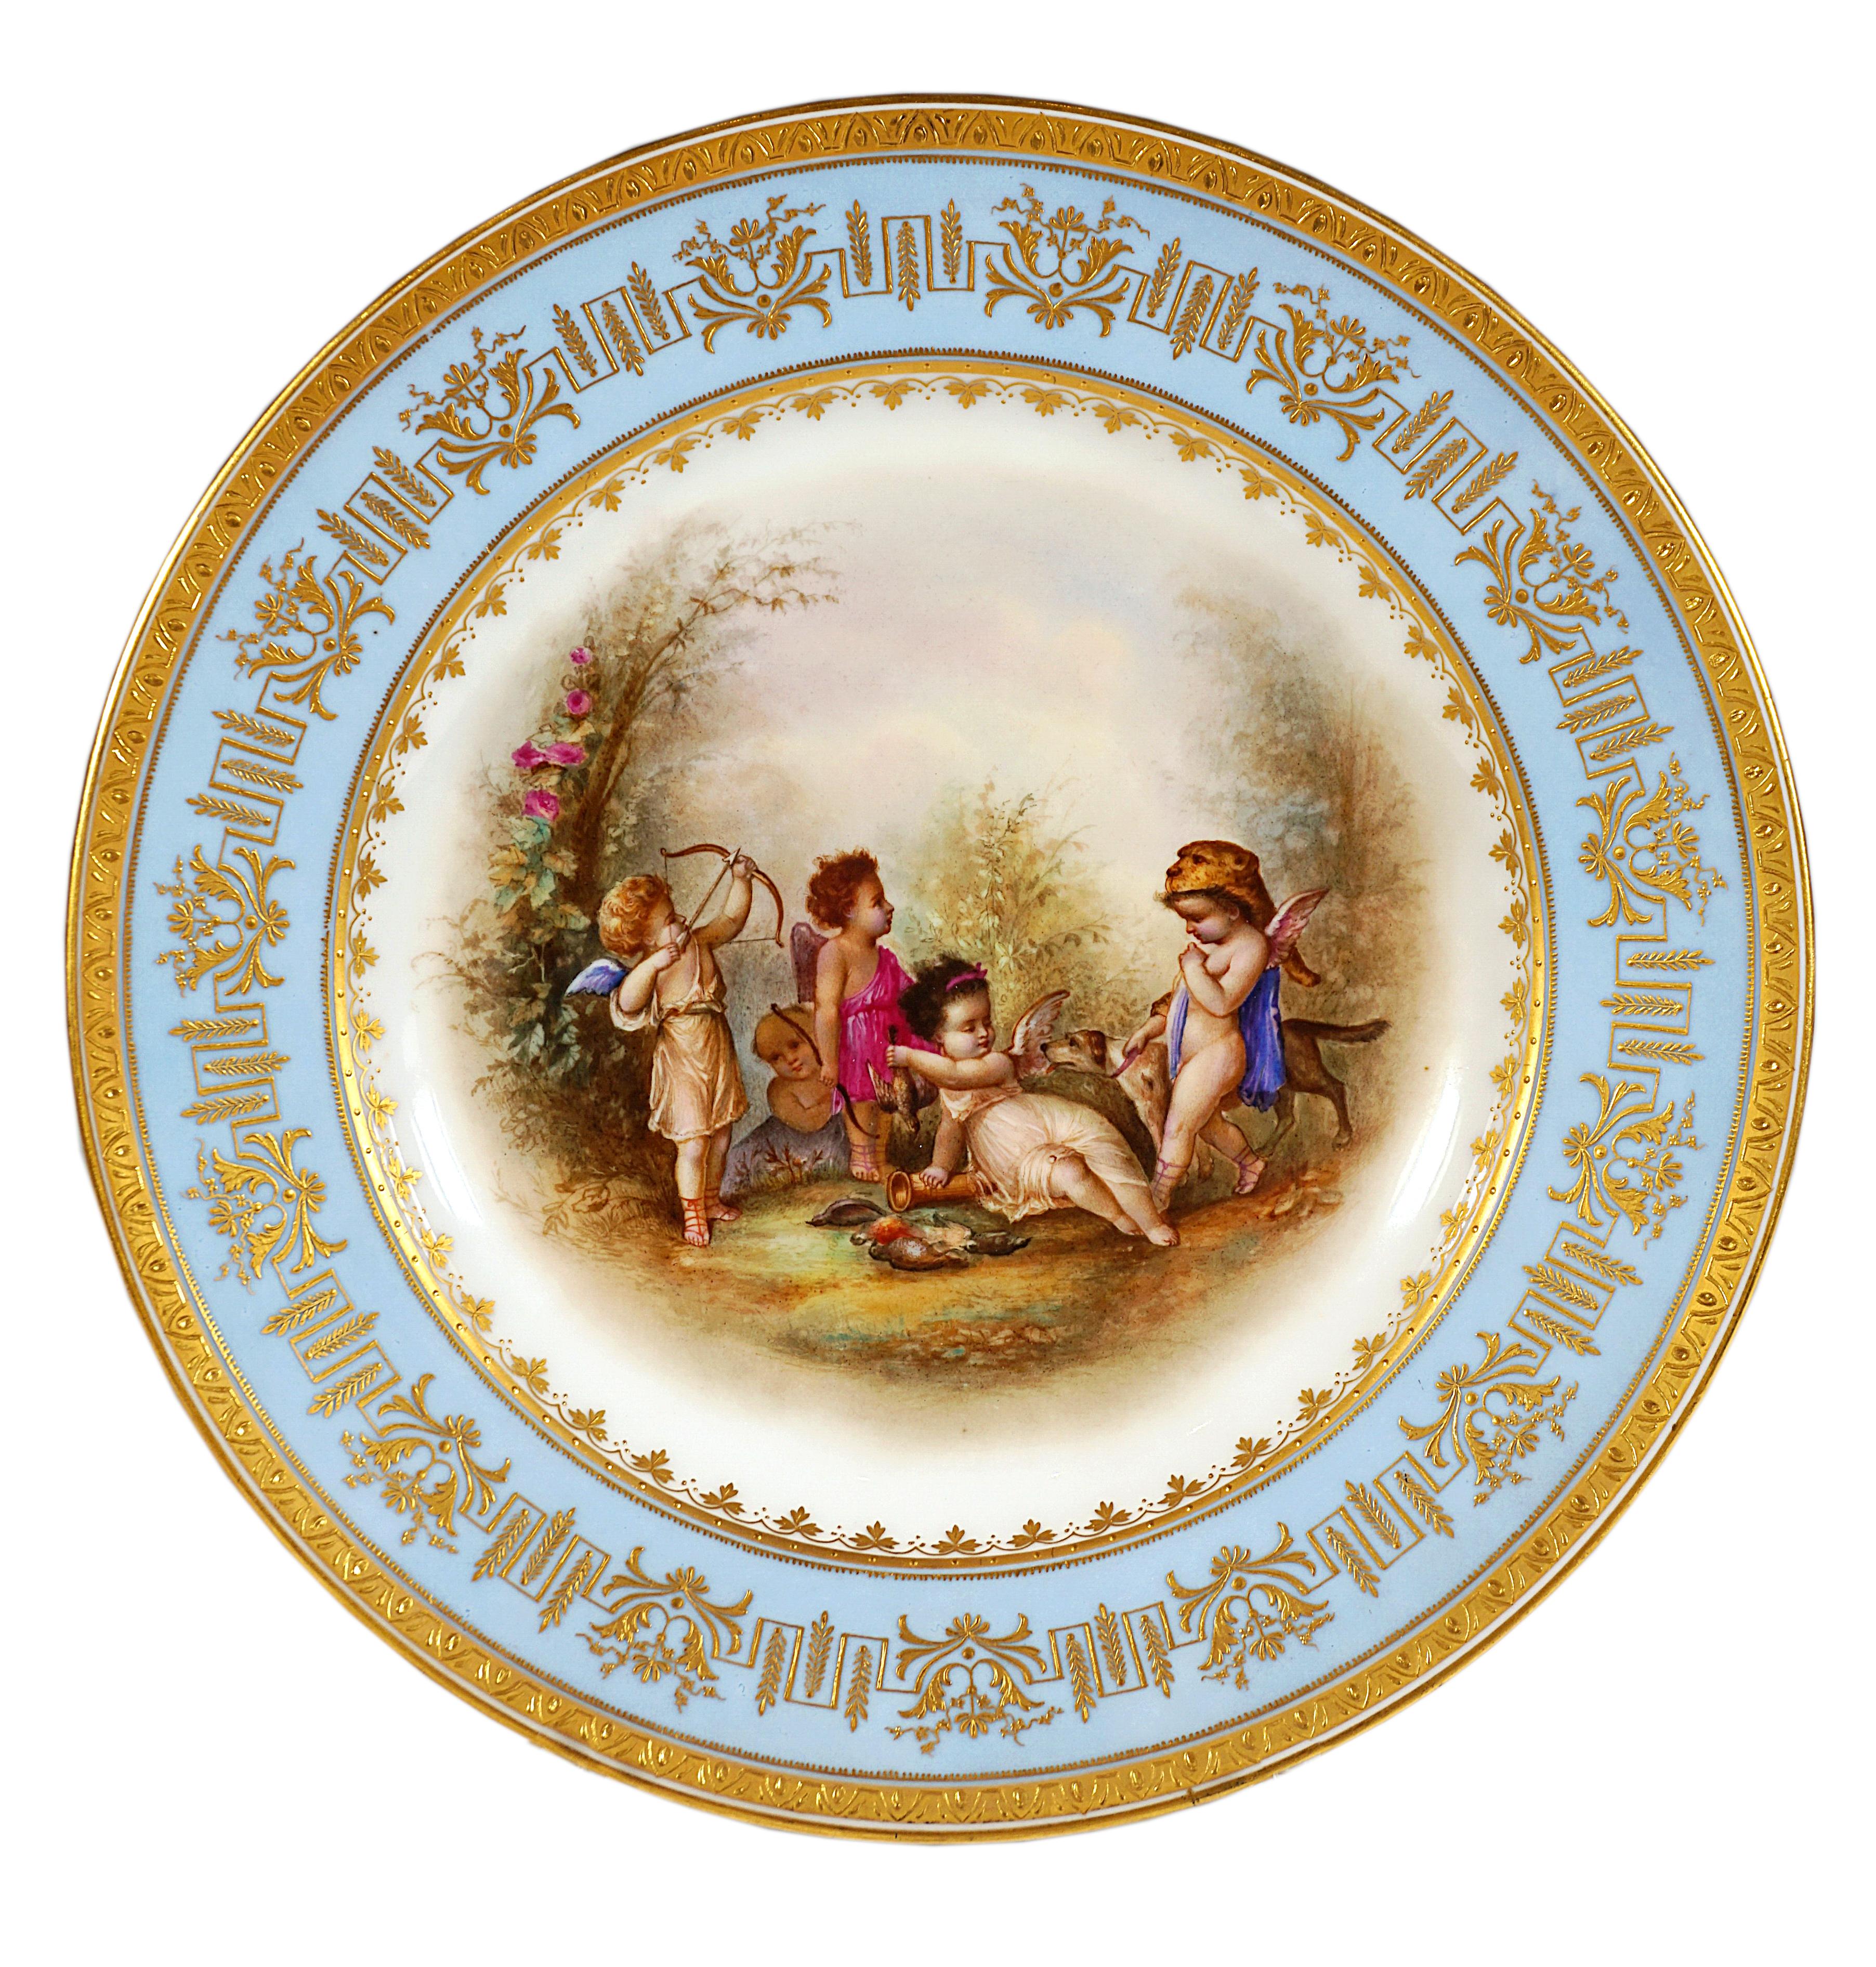 Wiener kaiserlicher Porzellan-Splendour-Teller, spielende Amors als Jäger, 1805